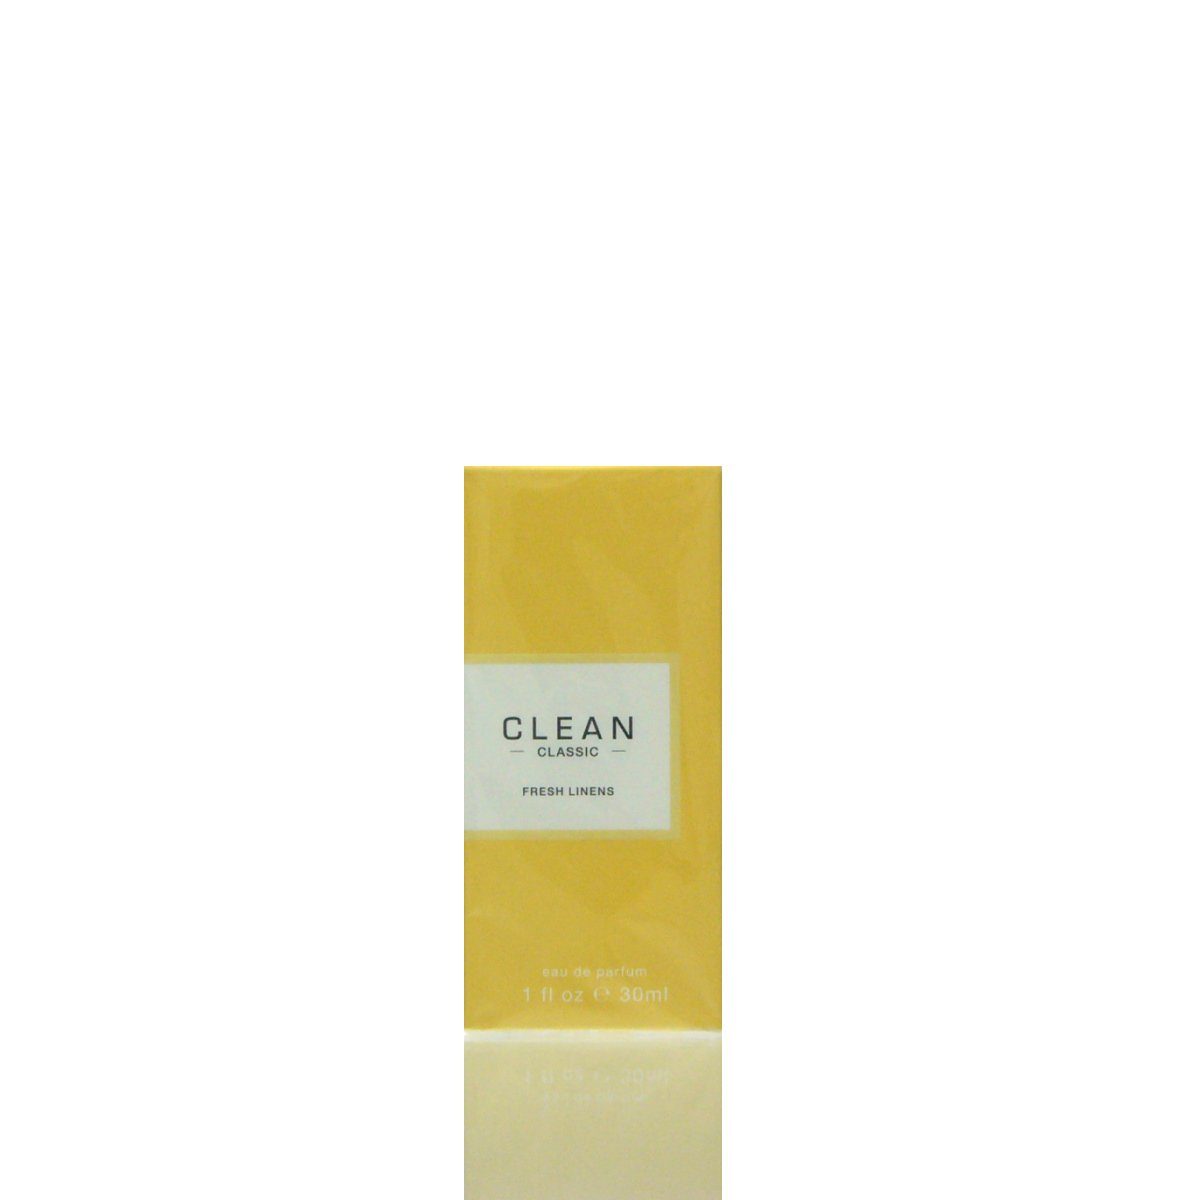 CLEAN Parfum Eau Eau Fresh Linens ml de Parfum Clean 30 de